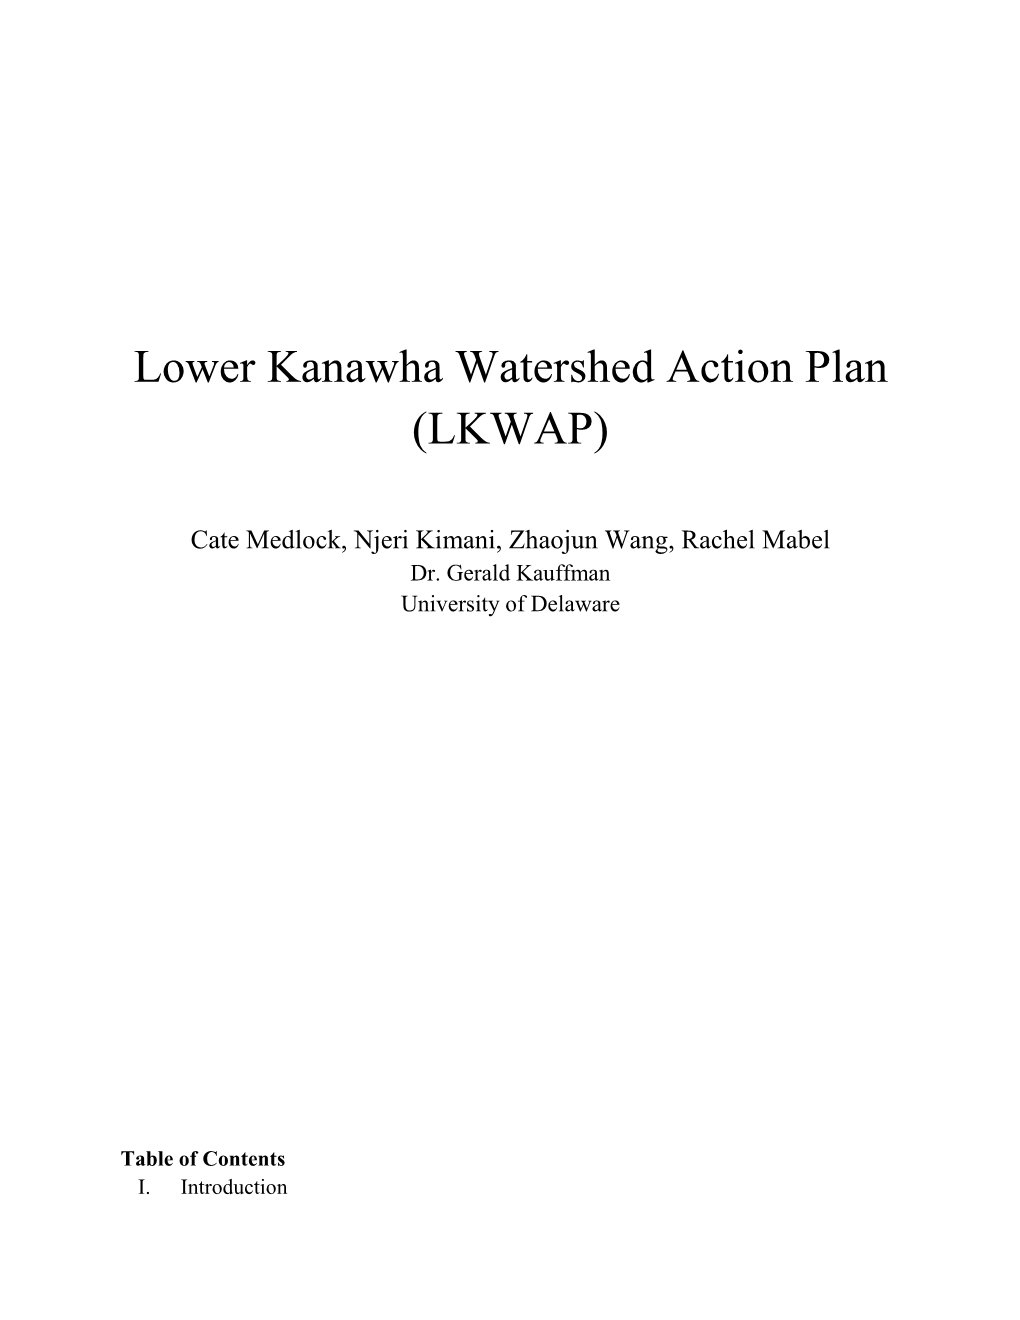 Lower Kanawha Watershed Action Plan (LKWAP)